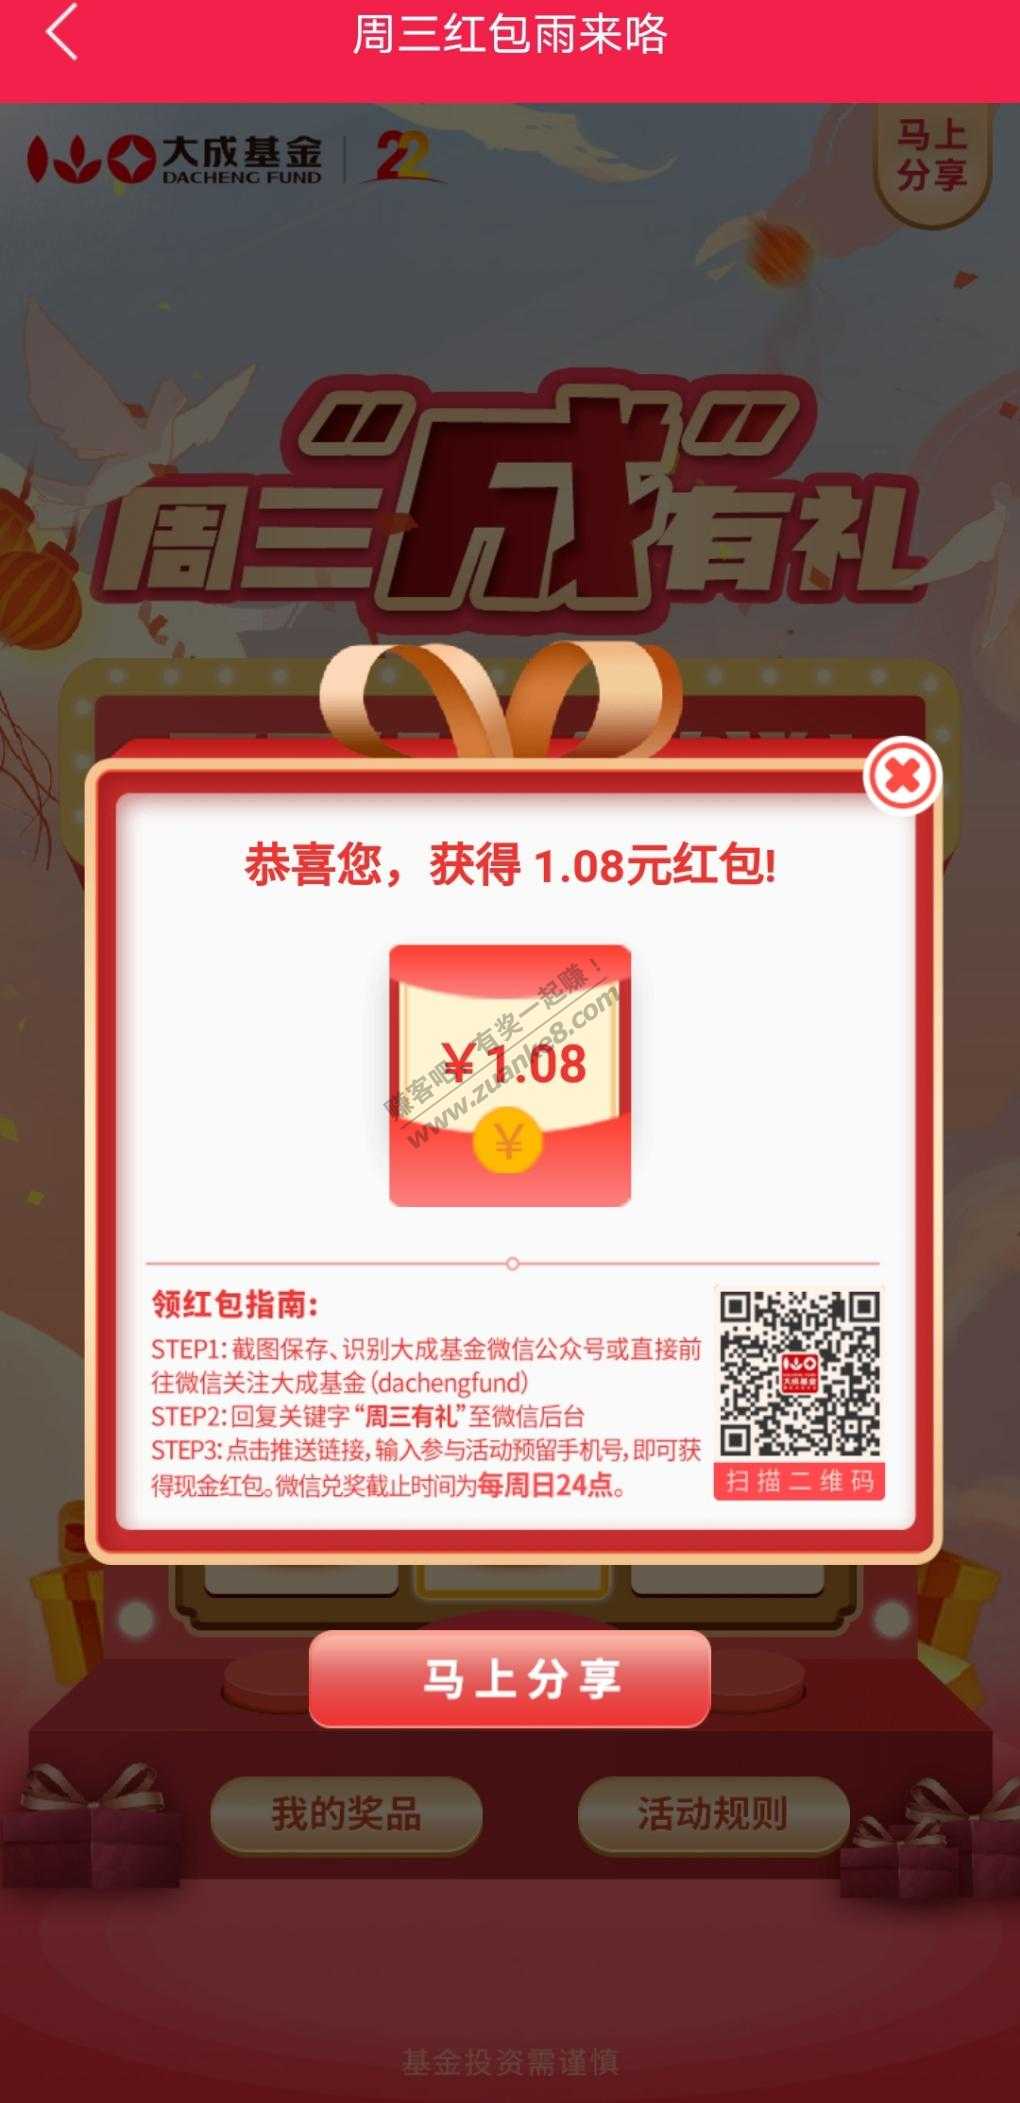 1.08元V.x红包-惠小助(52huixz.com)